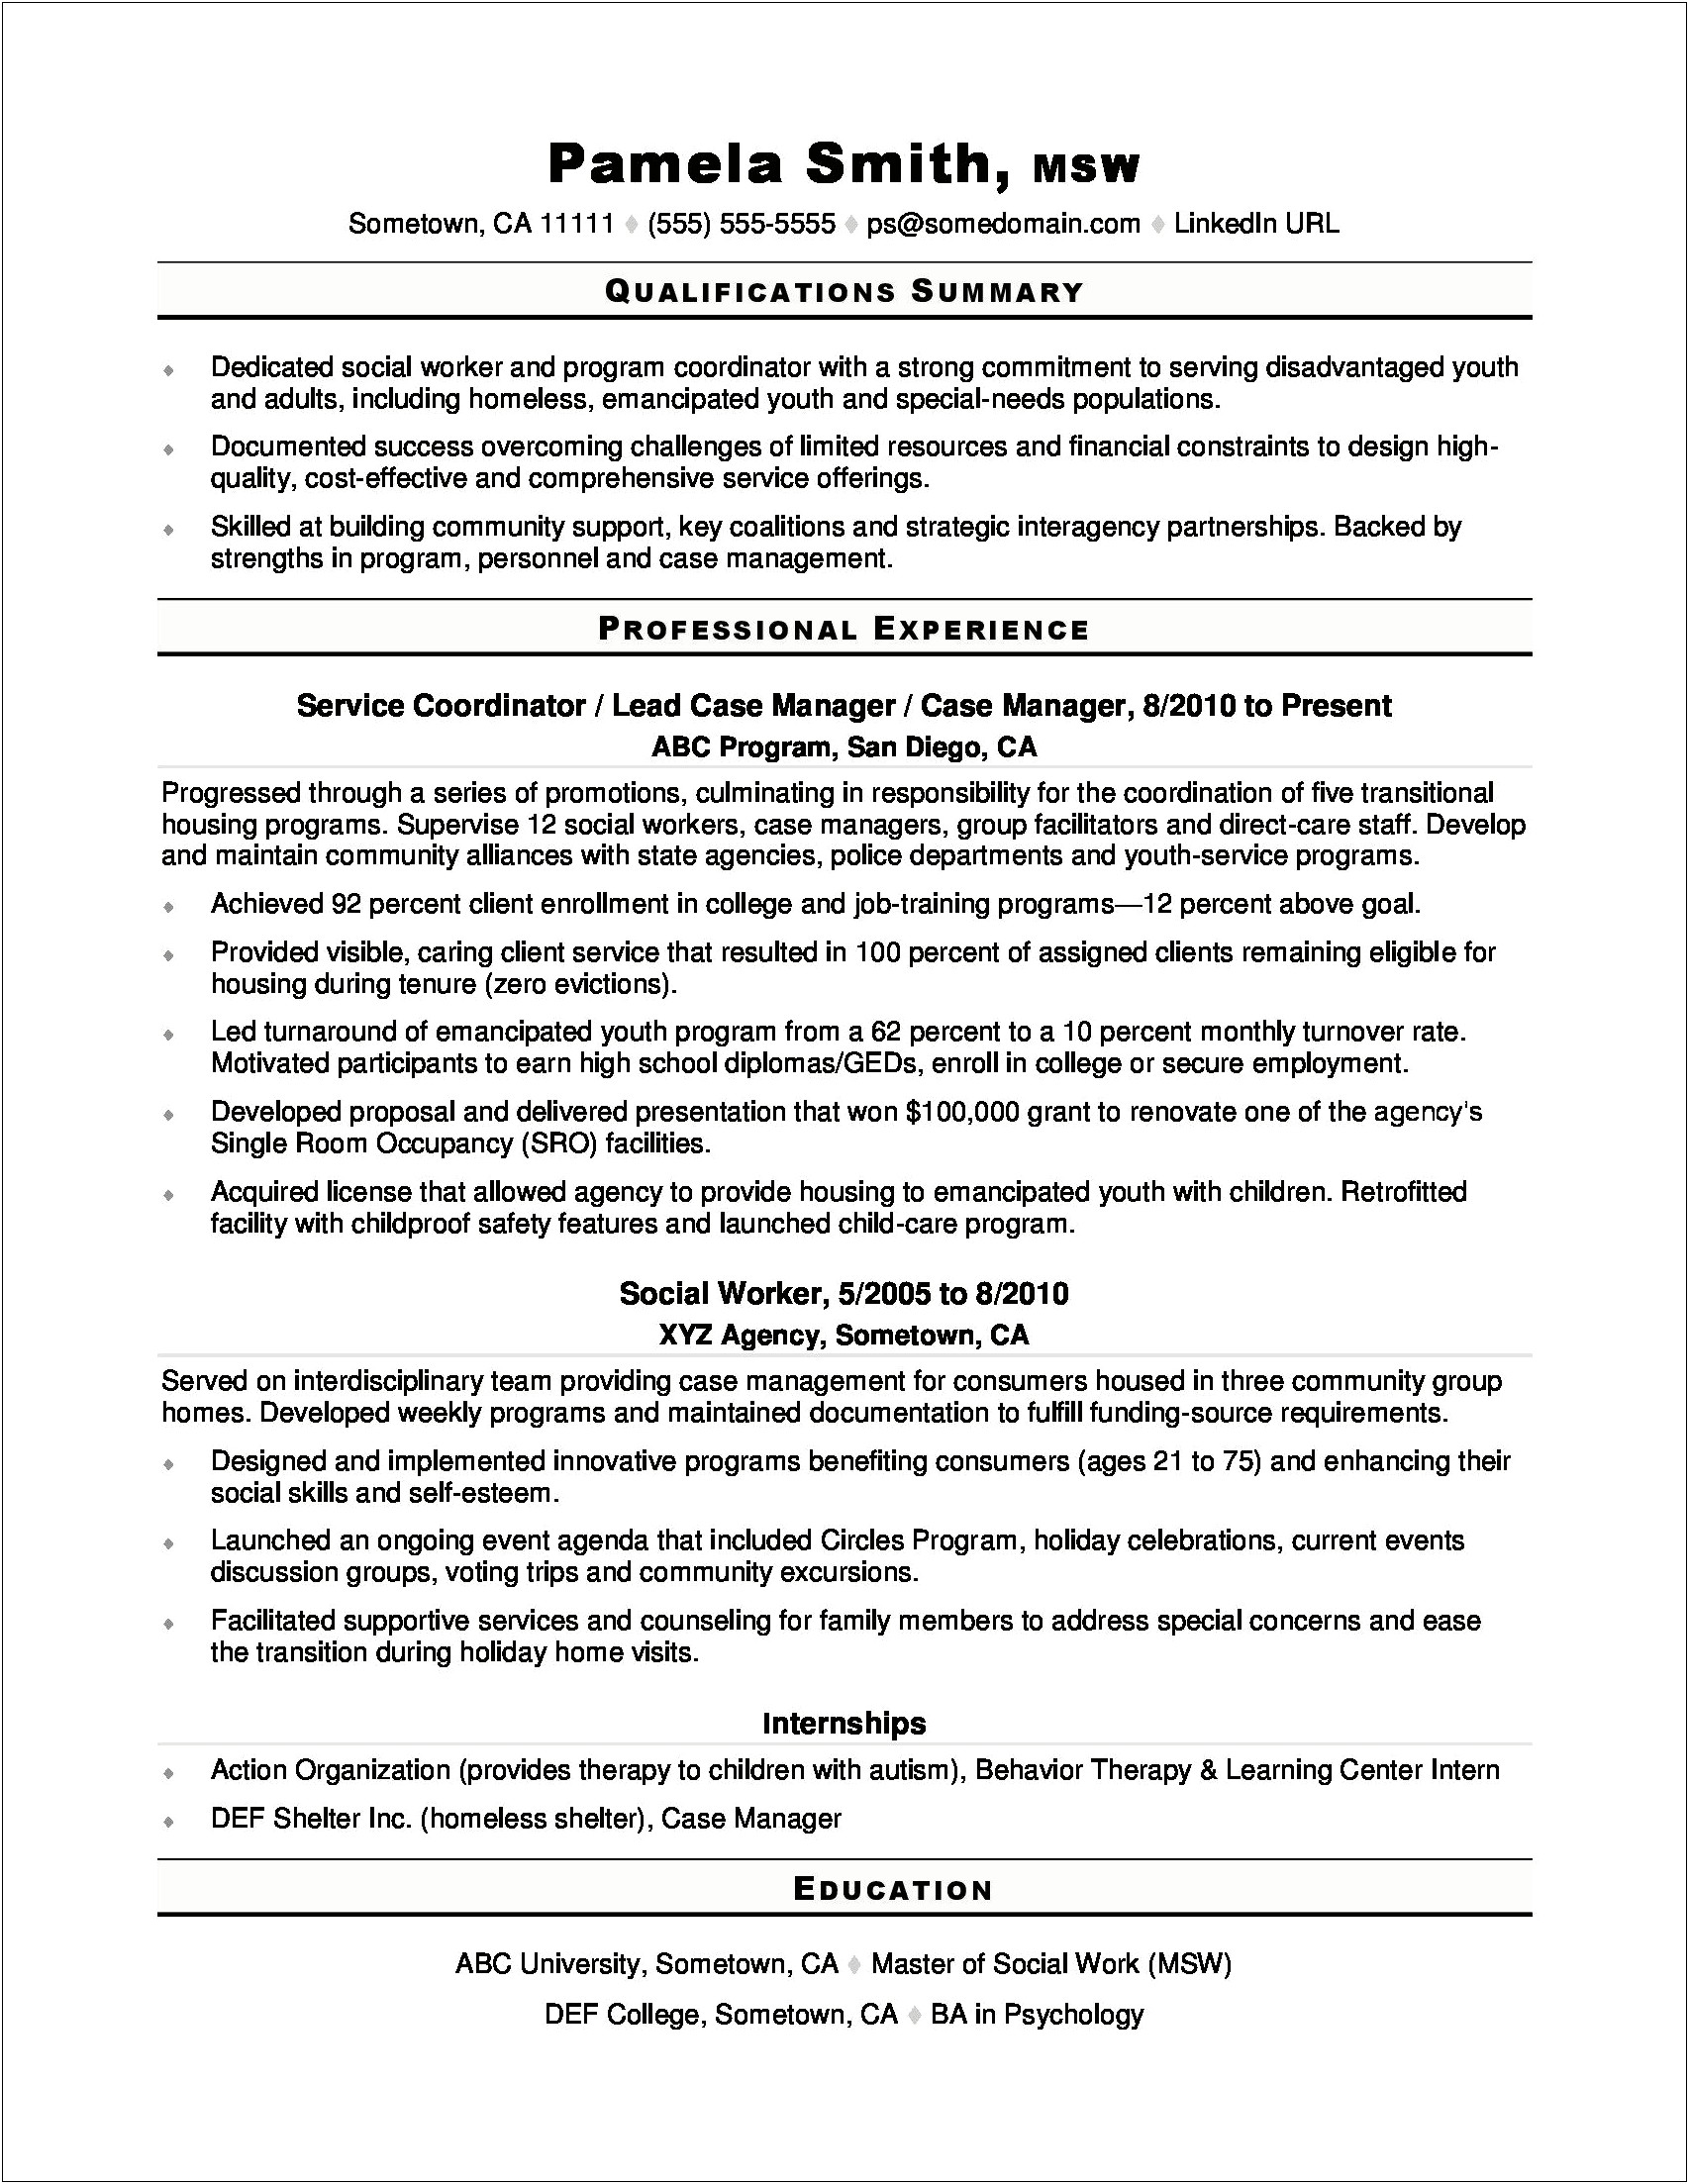 Sample Resume For Social Worker Position